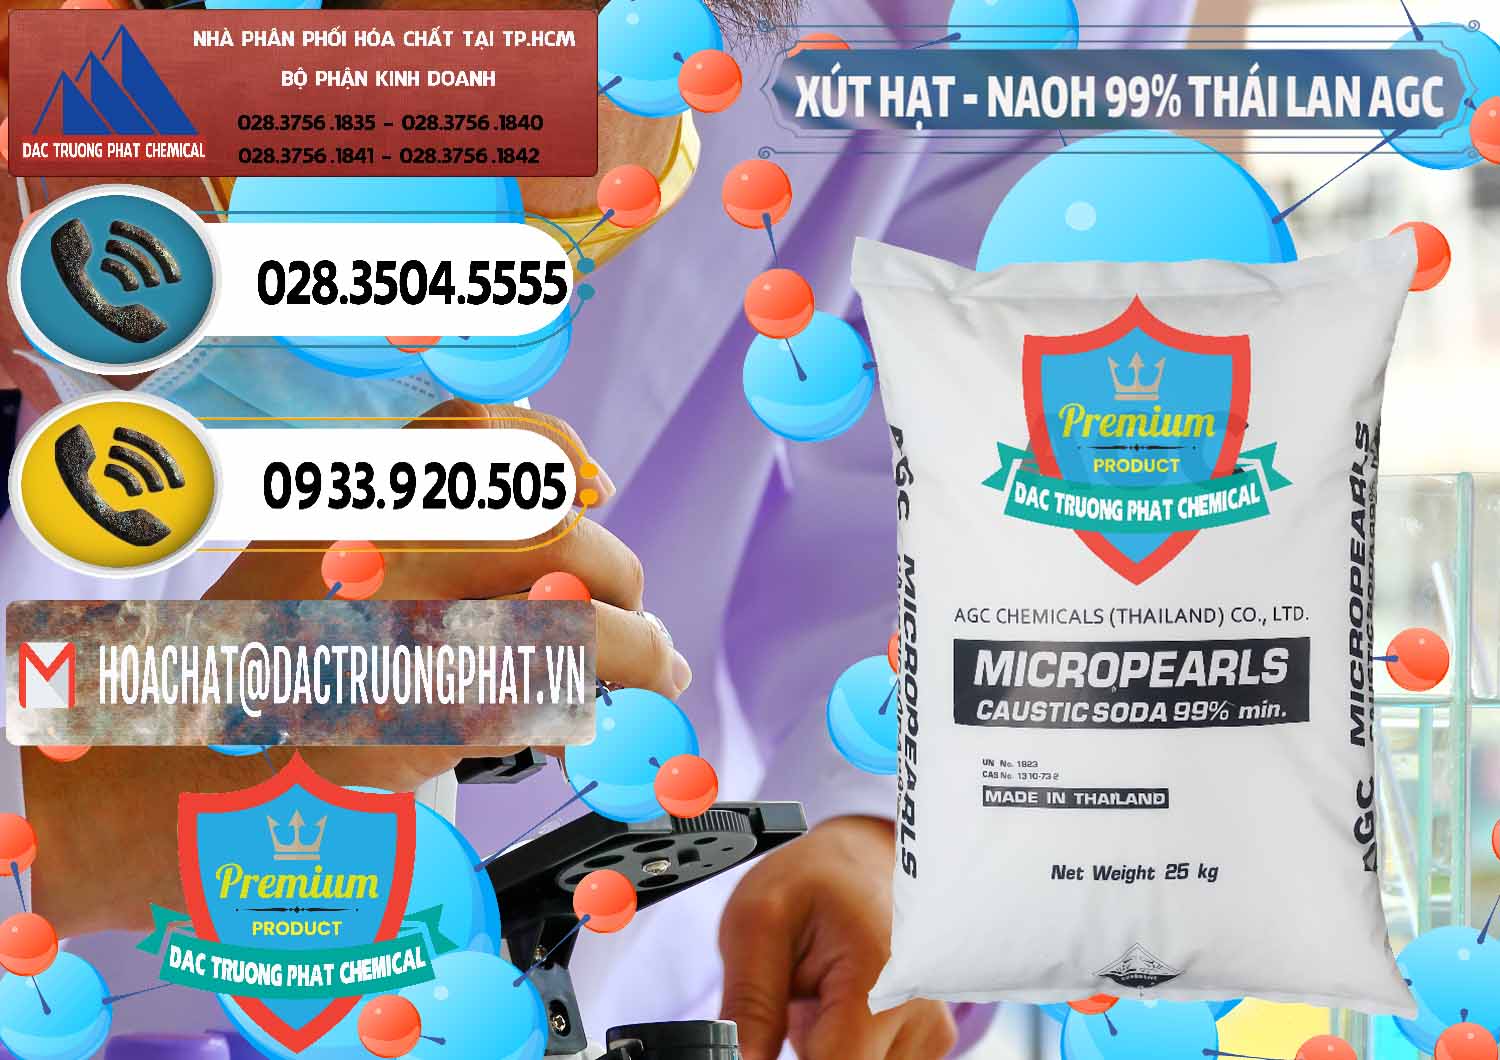 Nơi bán và cung ứng Xút Hạt - NaOH Bột 99% AGC Thái Lan - 0168 - Bán và cung cấp hóa chất tại TP.HCM - hoachatdetnhuom.vn